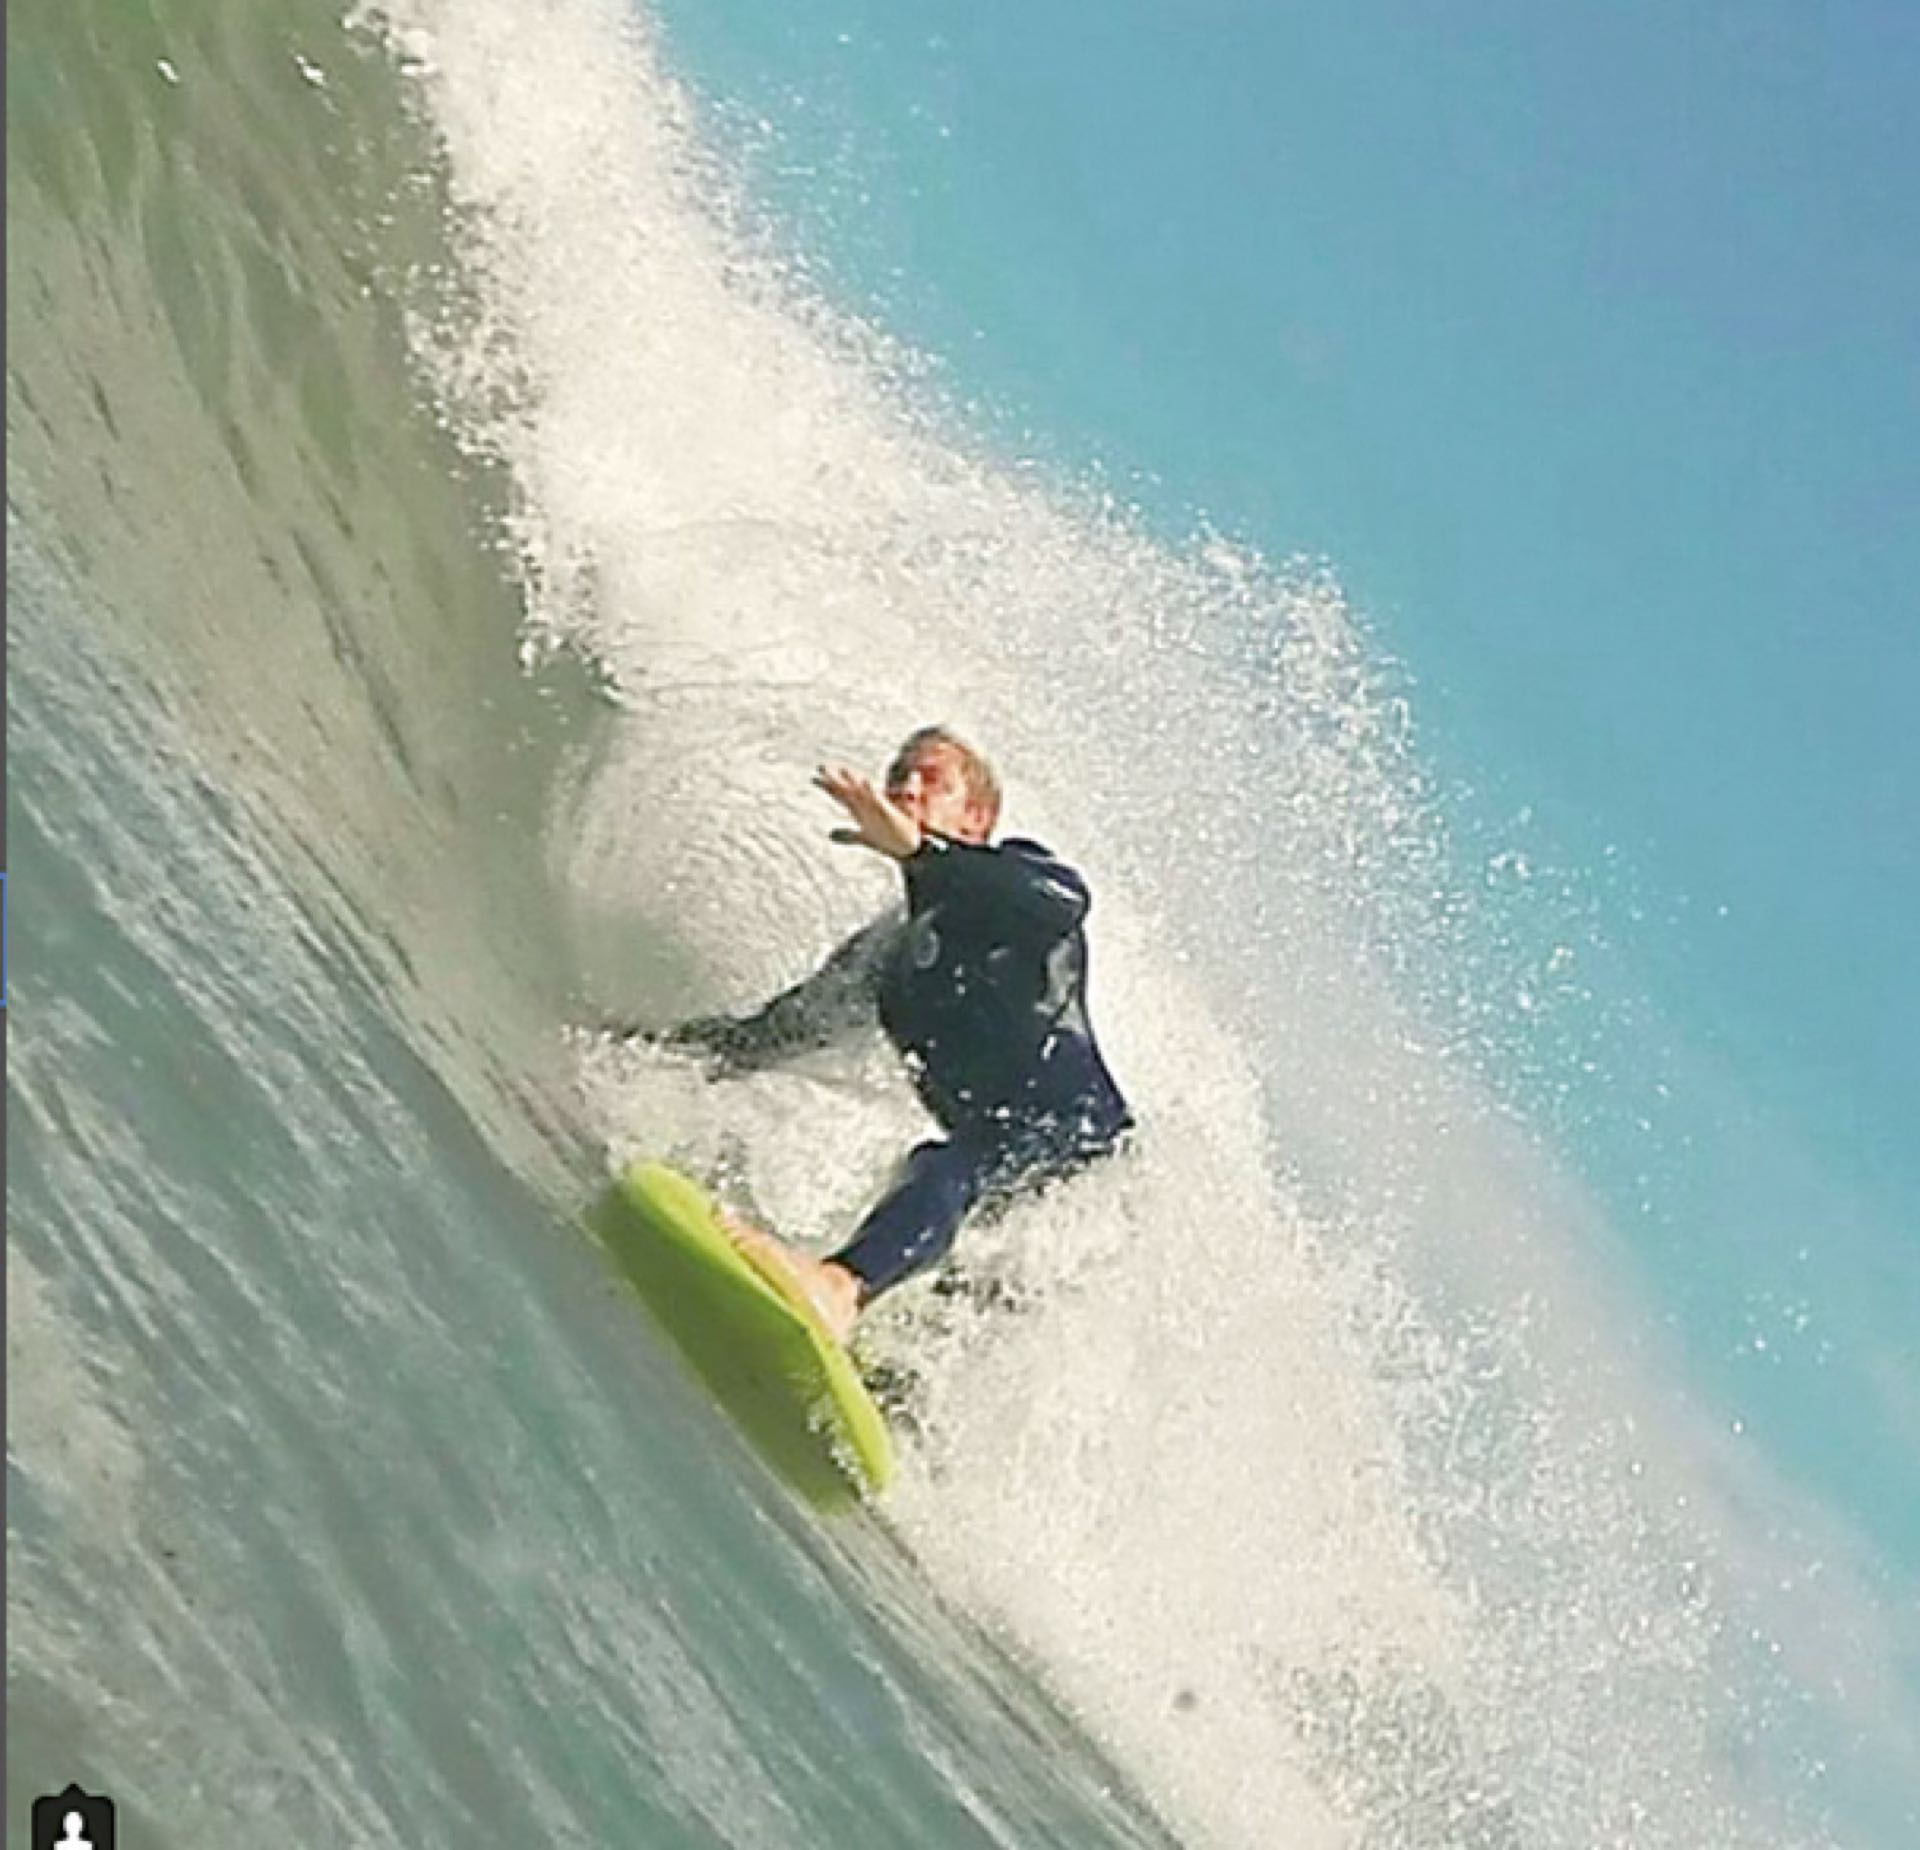 Haciendo surf, una de sus pasiones.